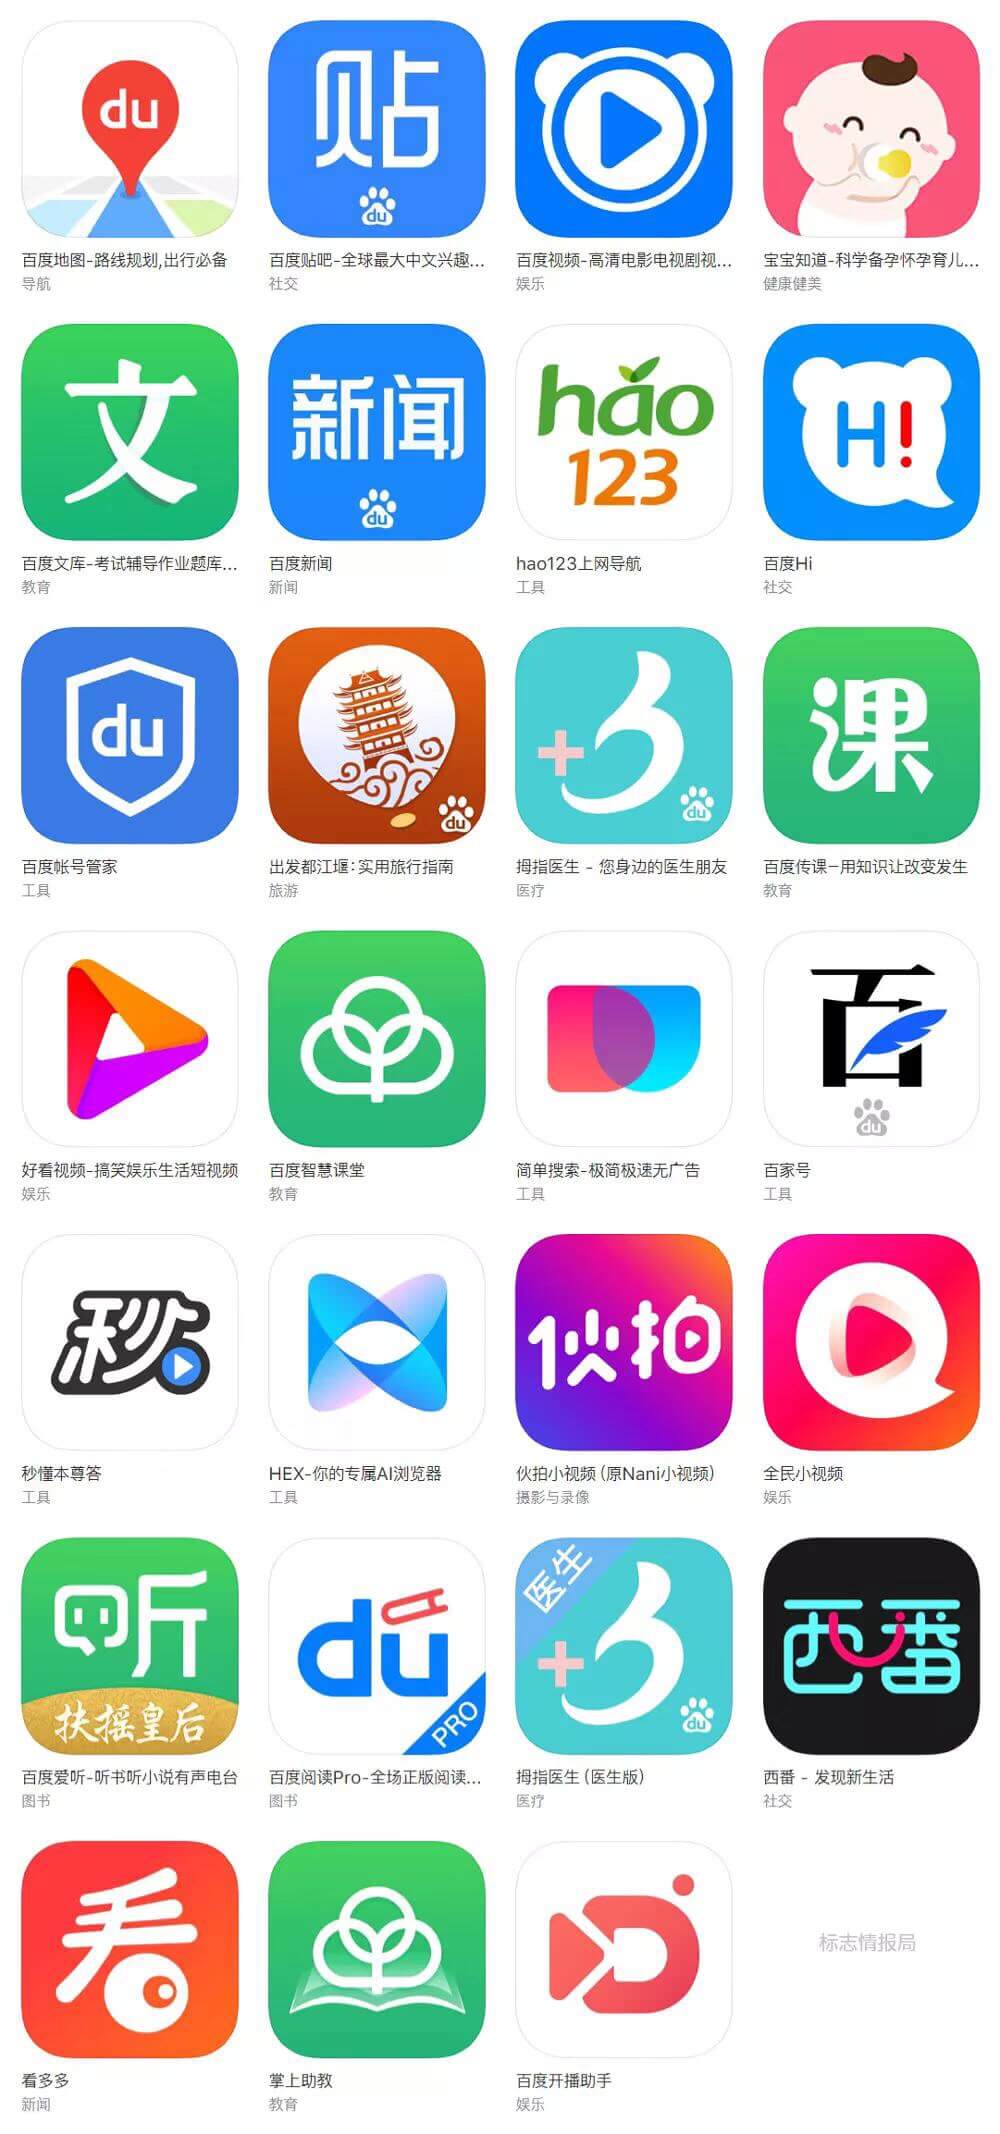 百度翻译新版app图标logo升级 品牌设计更加年轻化